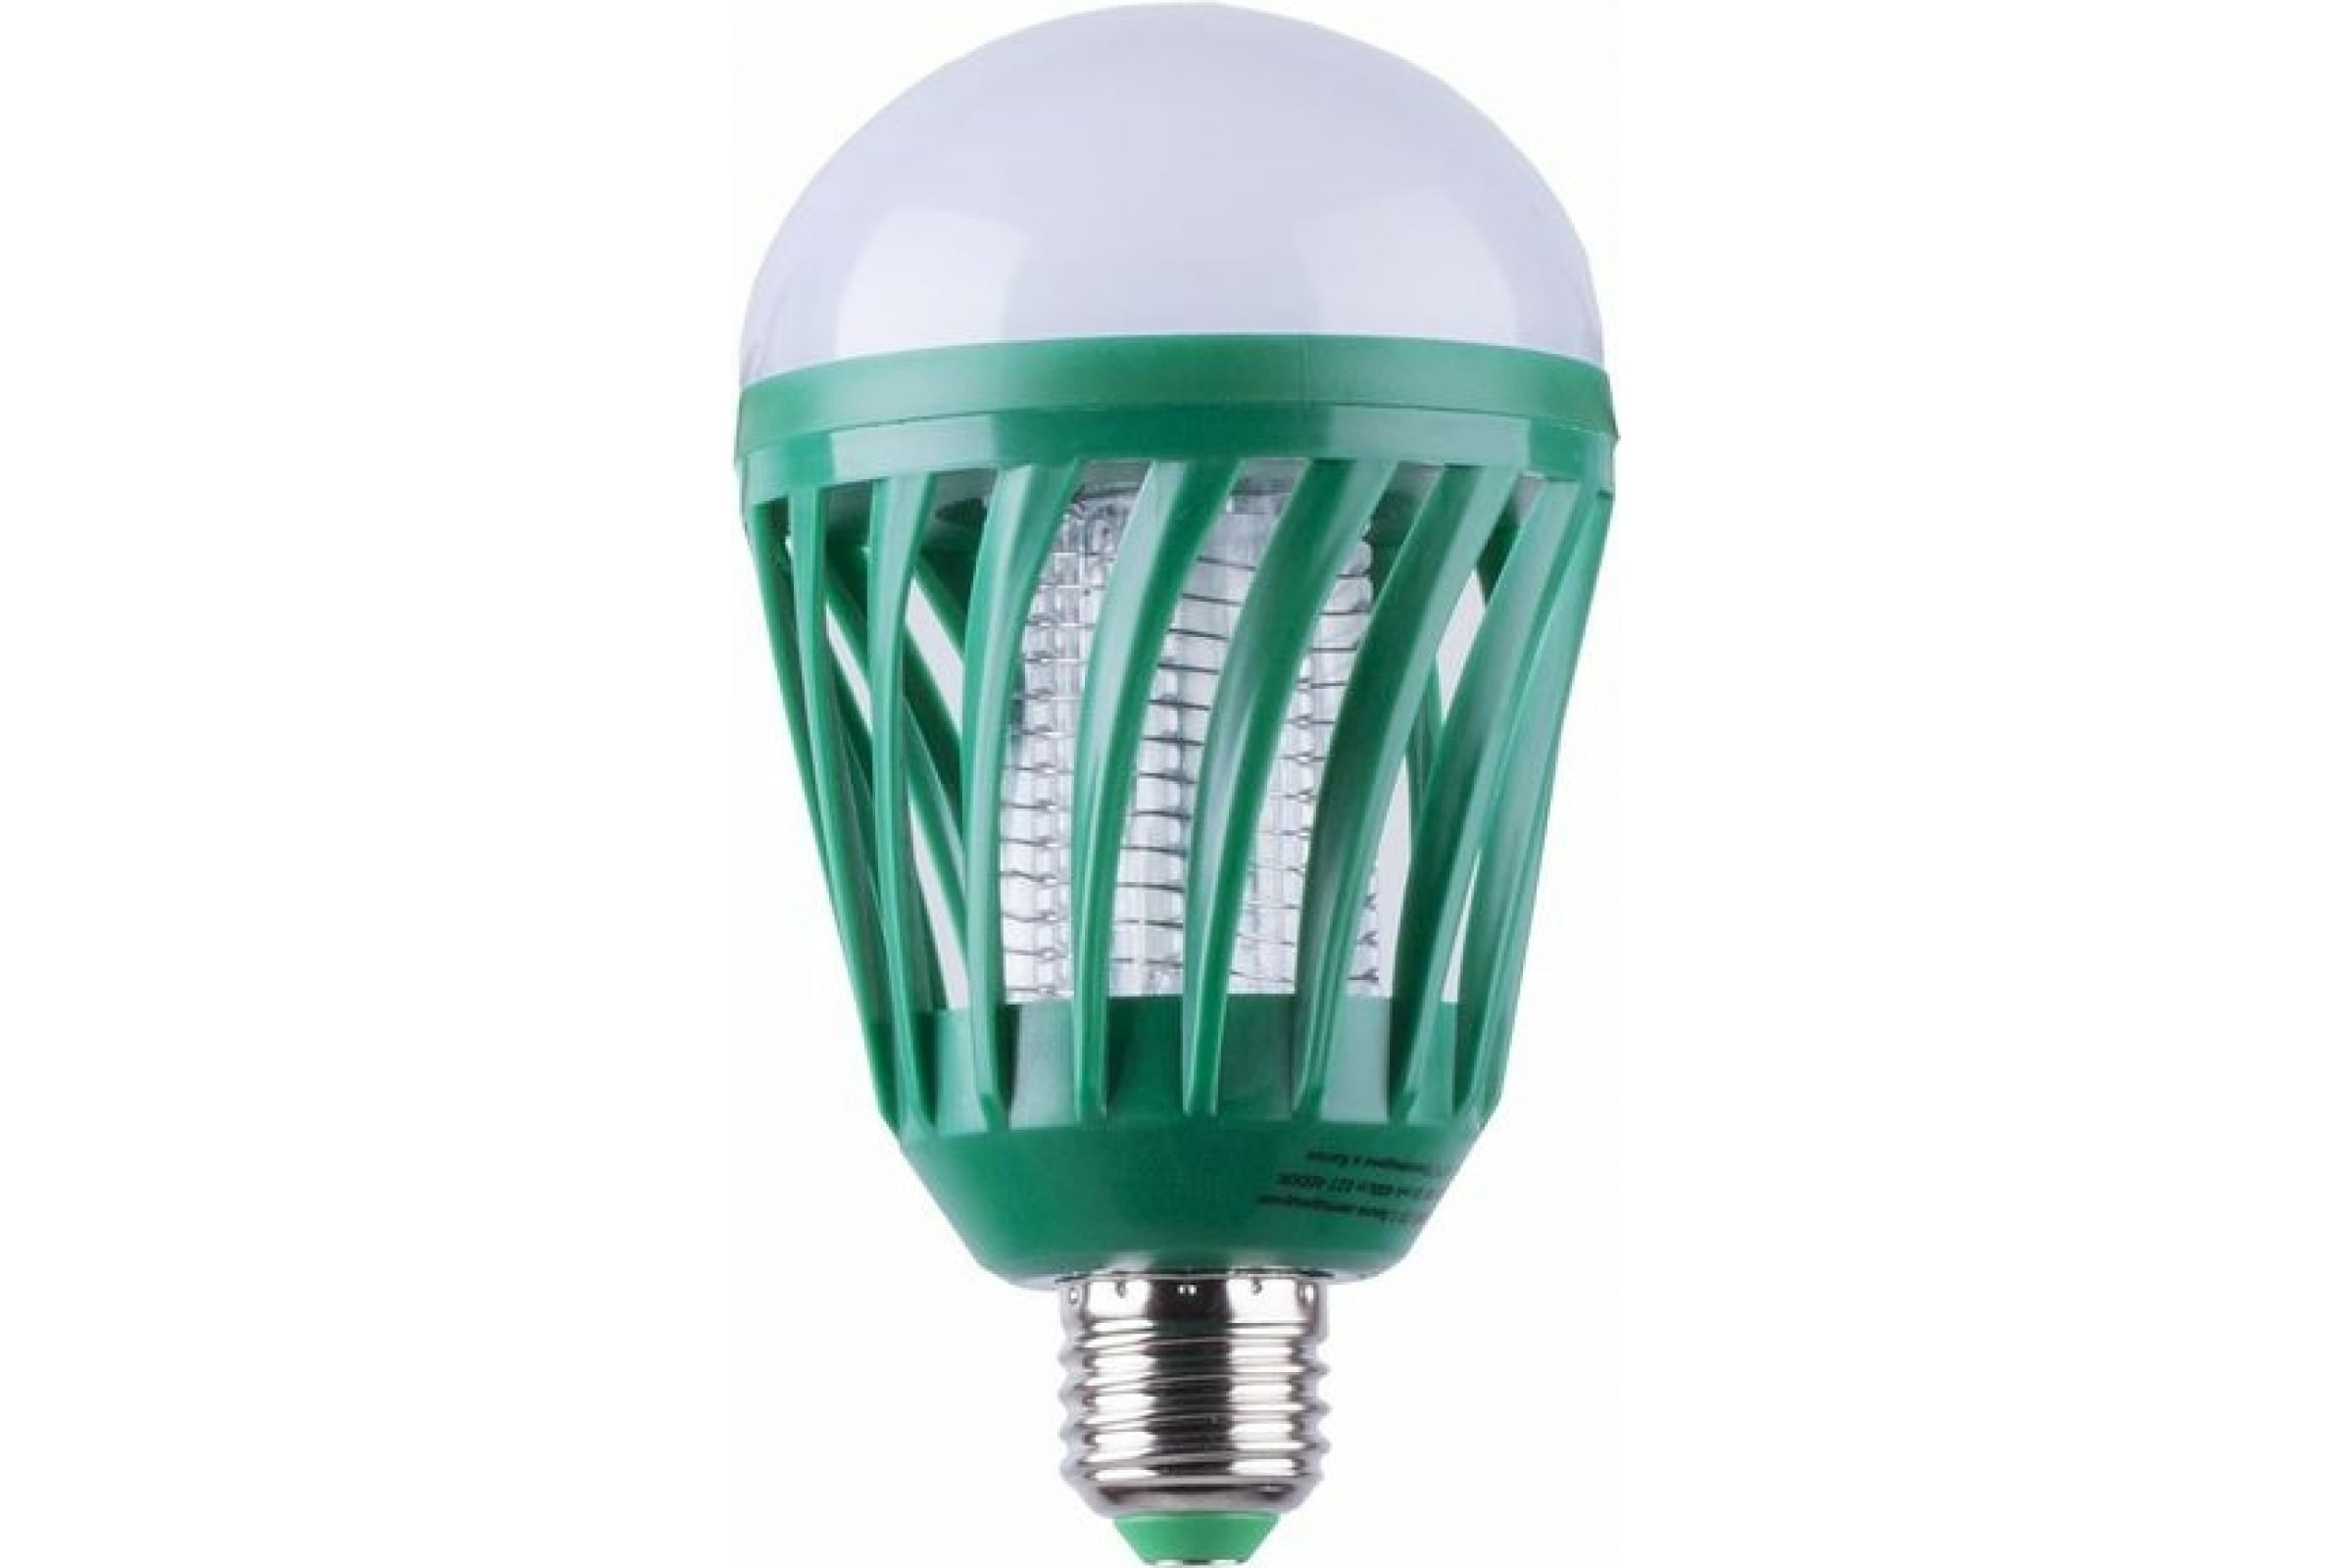 Лампа антимоскитная E27 LB-850